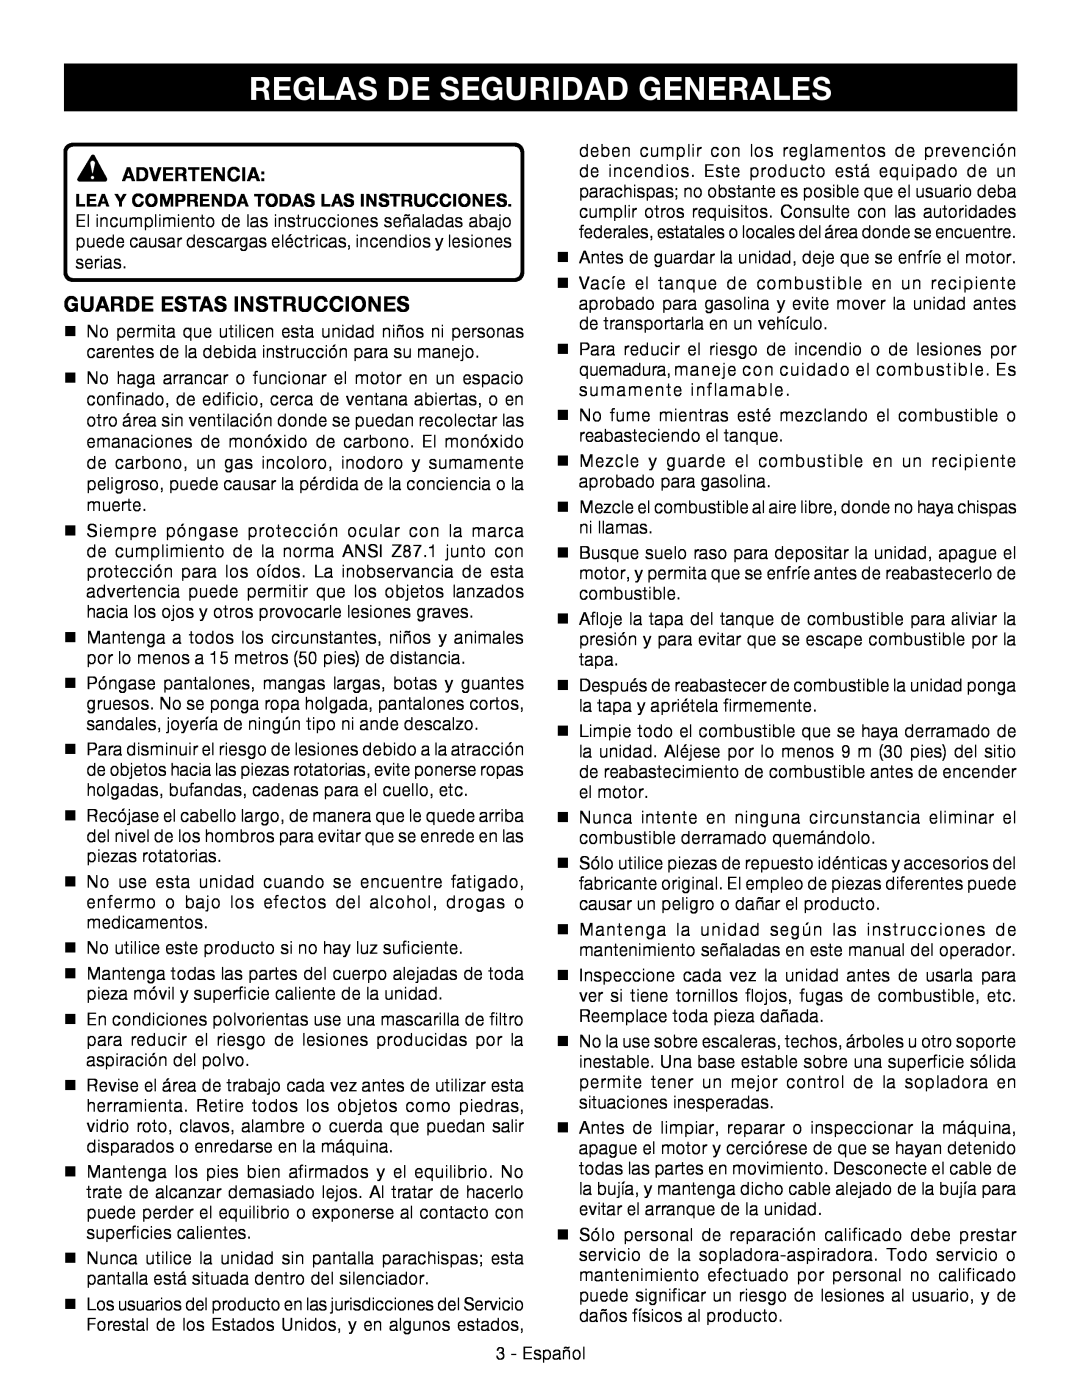 Ryobi RY09056 manuel dutilisation Reglas de seguridad generales, Guarde estas instrucciones, Advertencia 